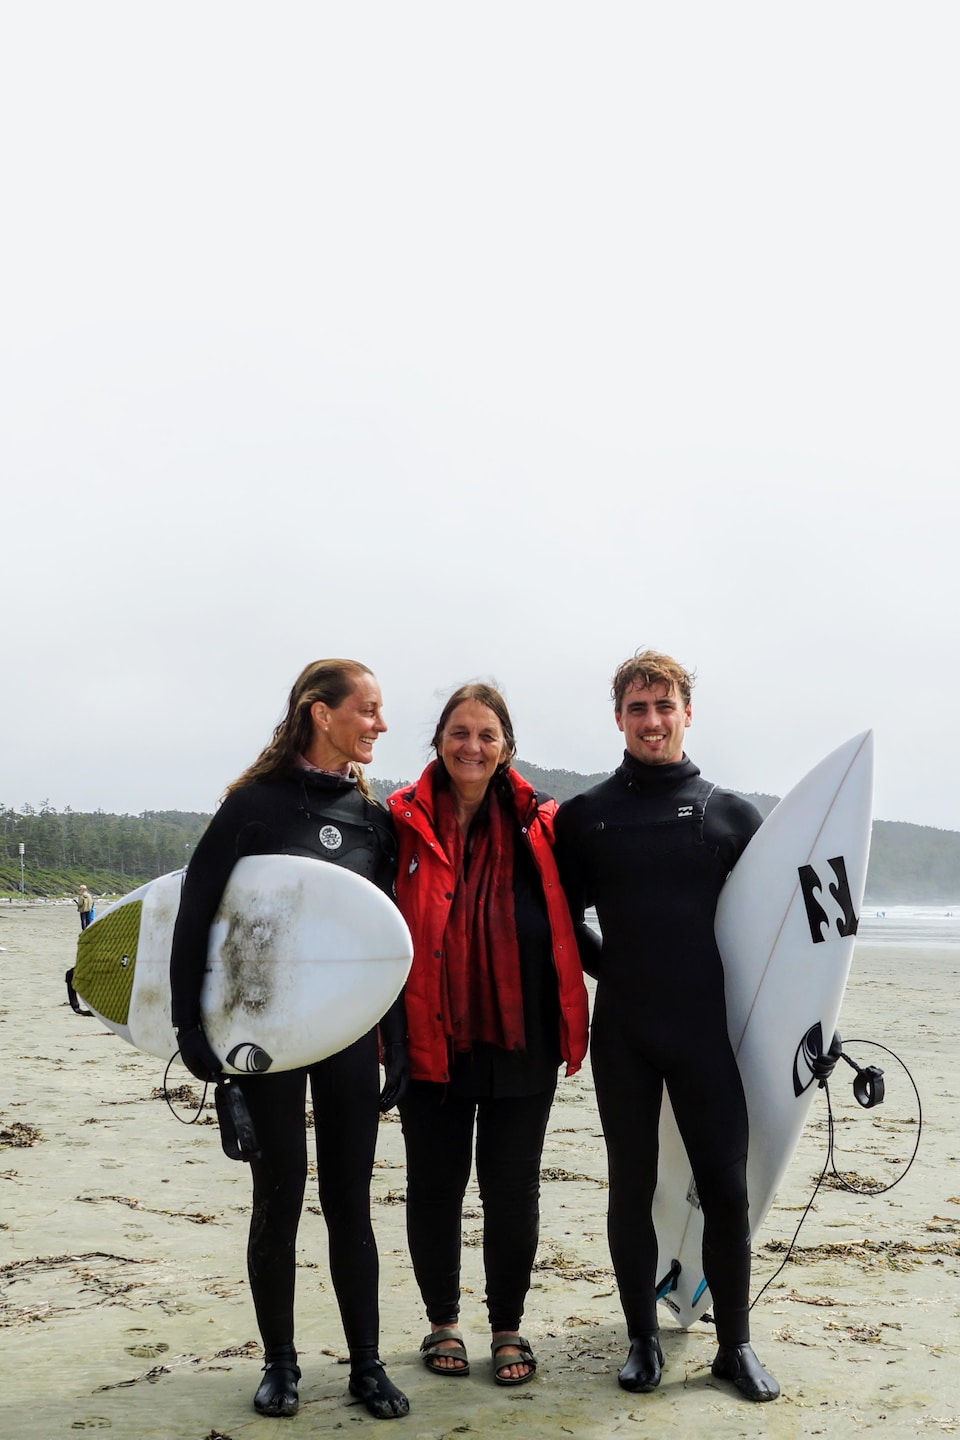 Deux surfeurs accompagnés d'une femme sur une plage.